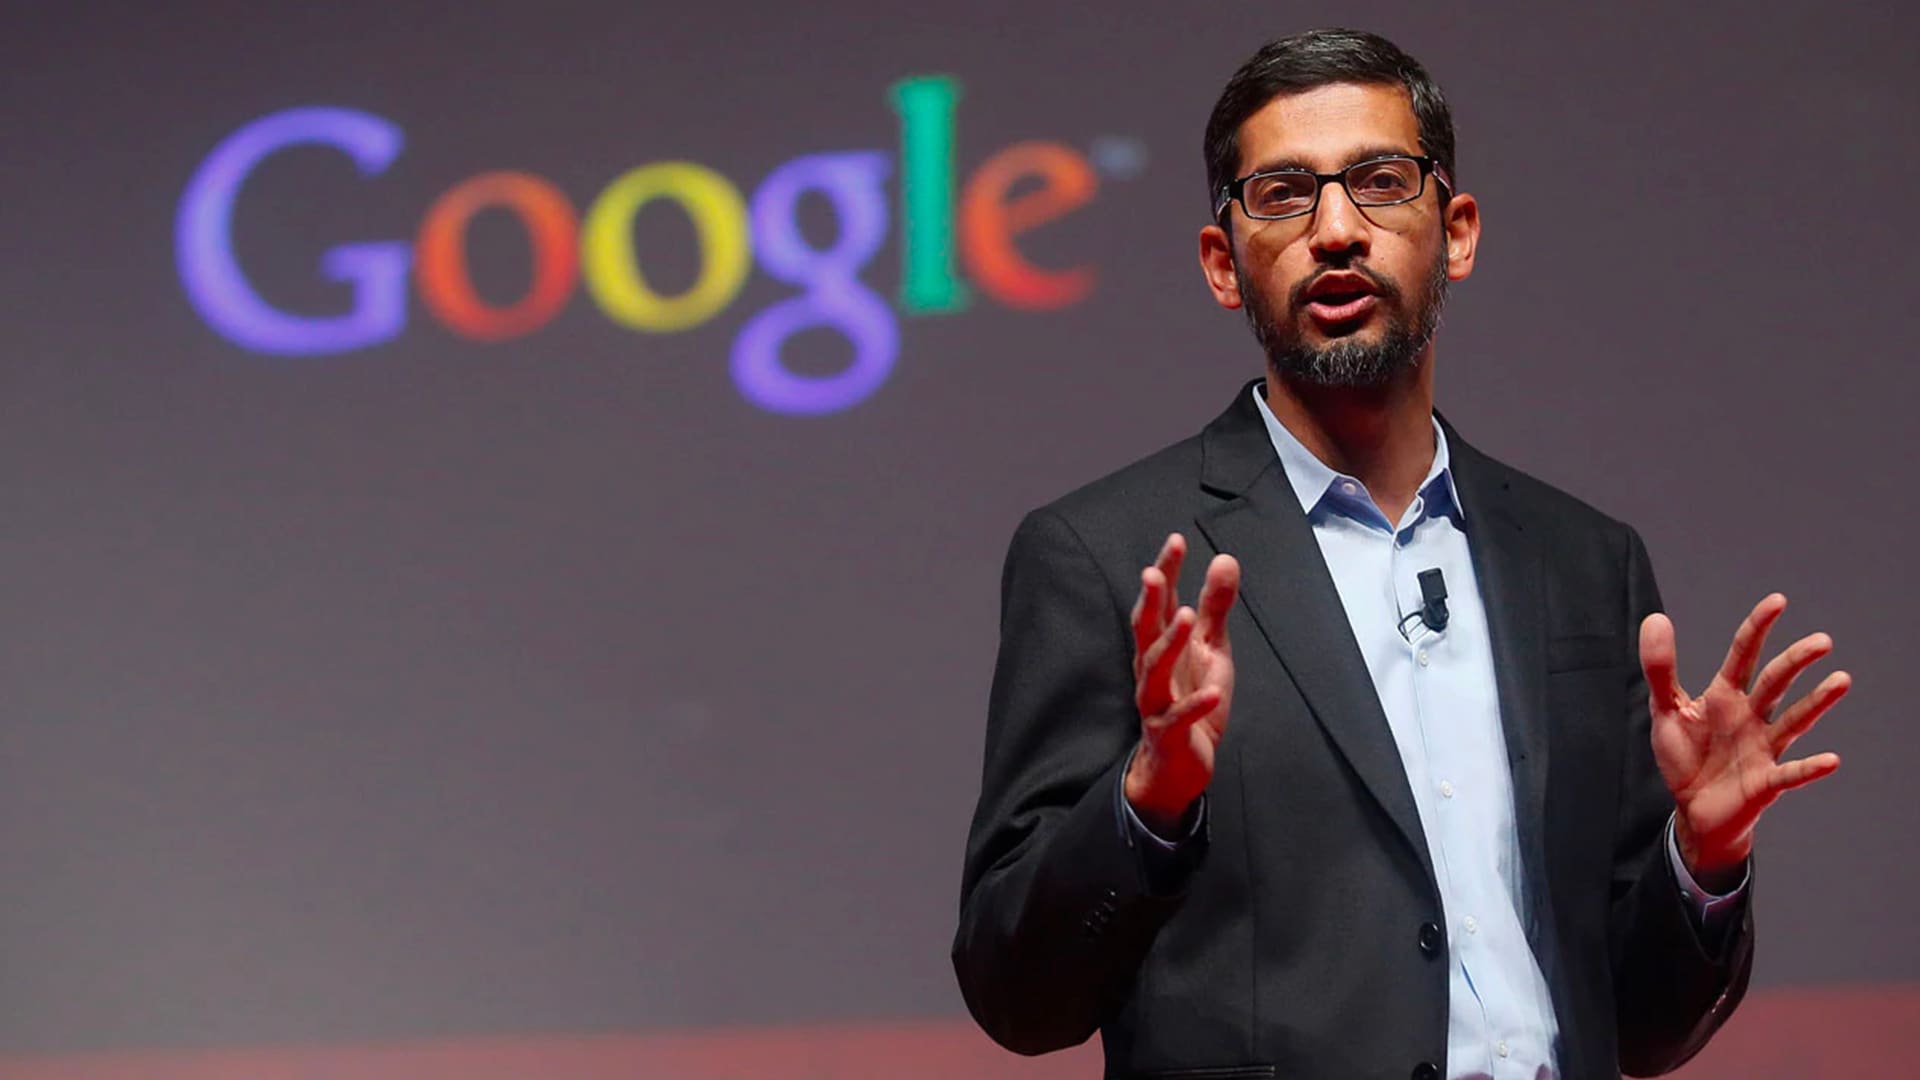 ساندار پیچای، مدیر عامل گوگل، هفته آینده در محاکمه ضد انحصار ایالات متحده در حال انجام است